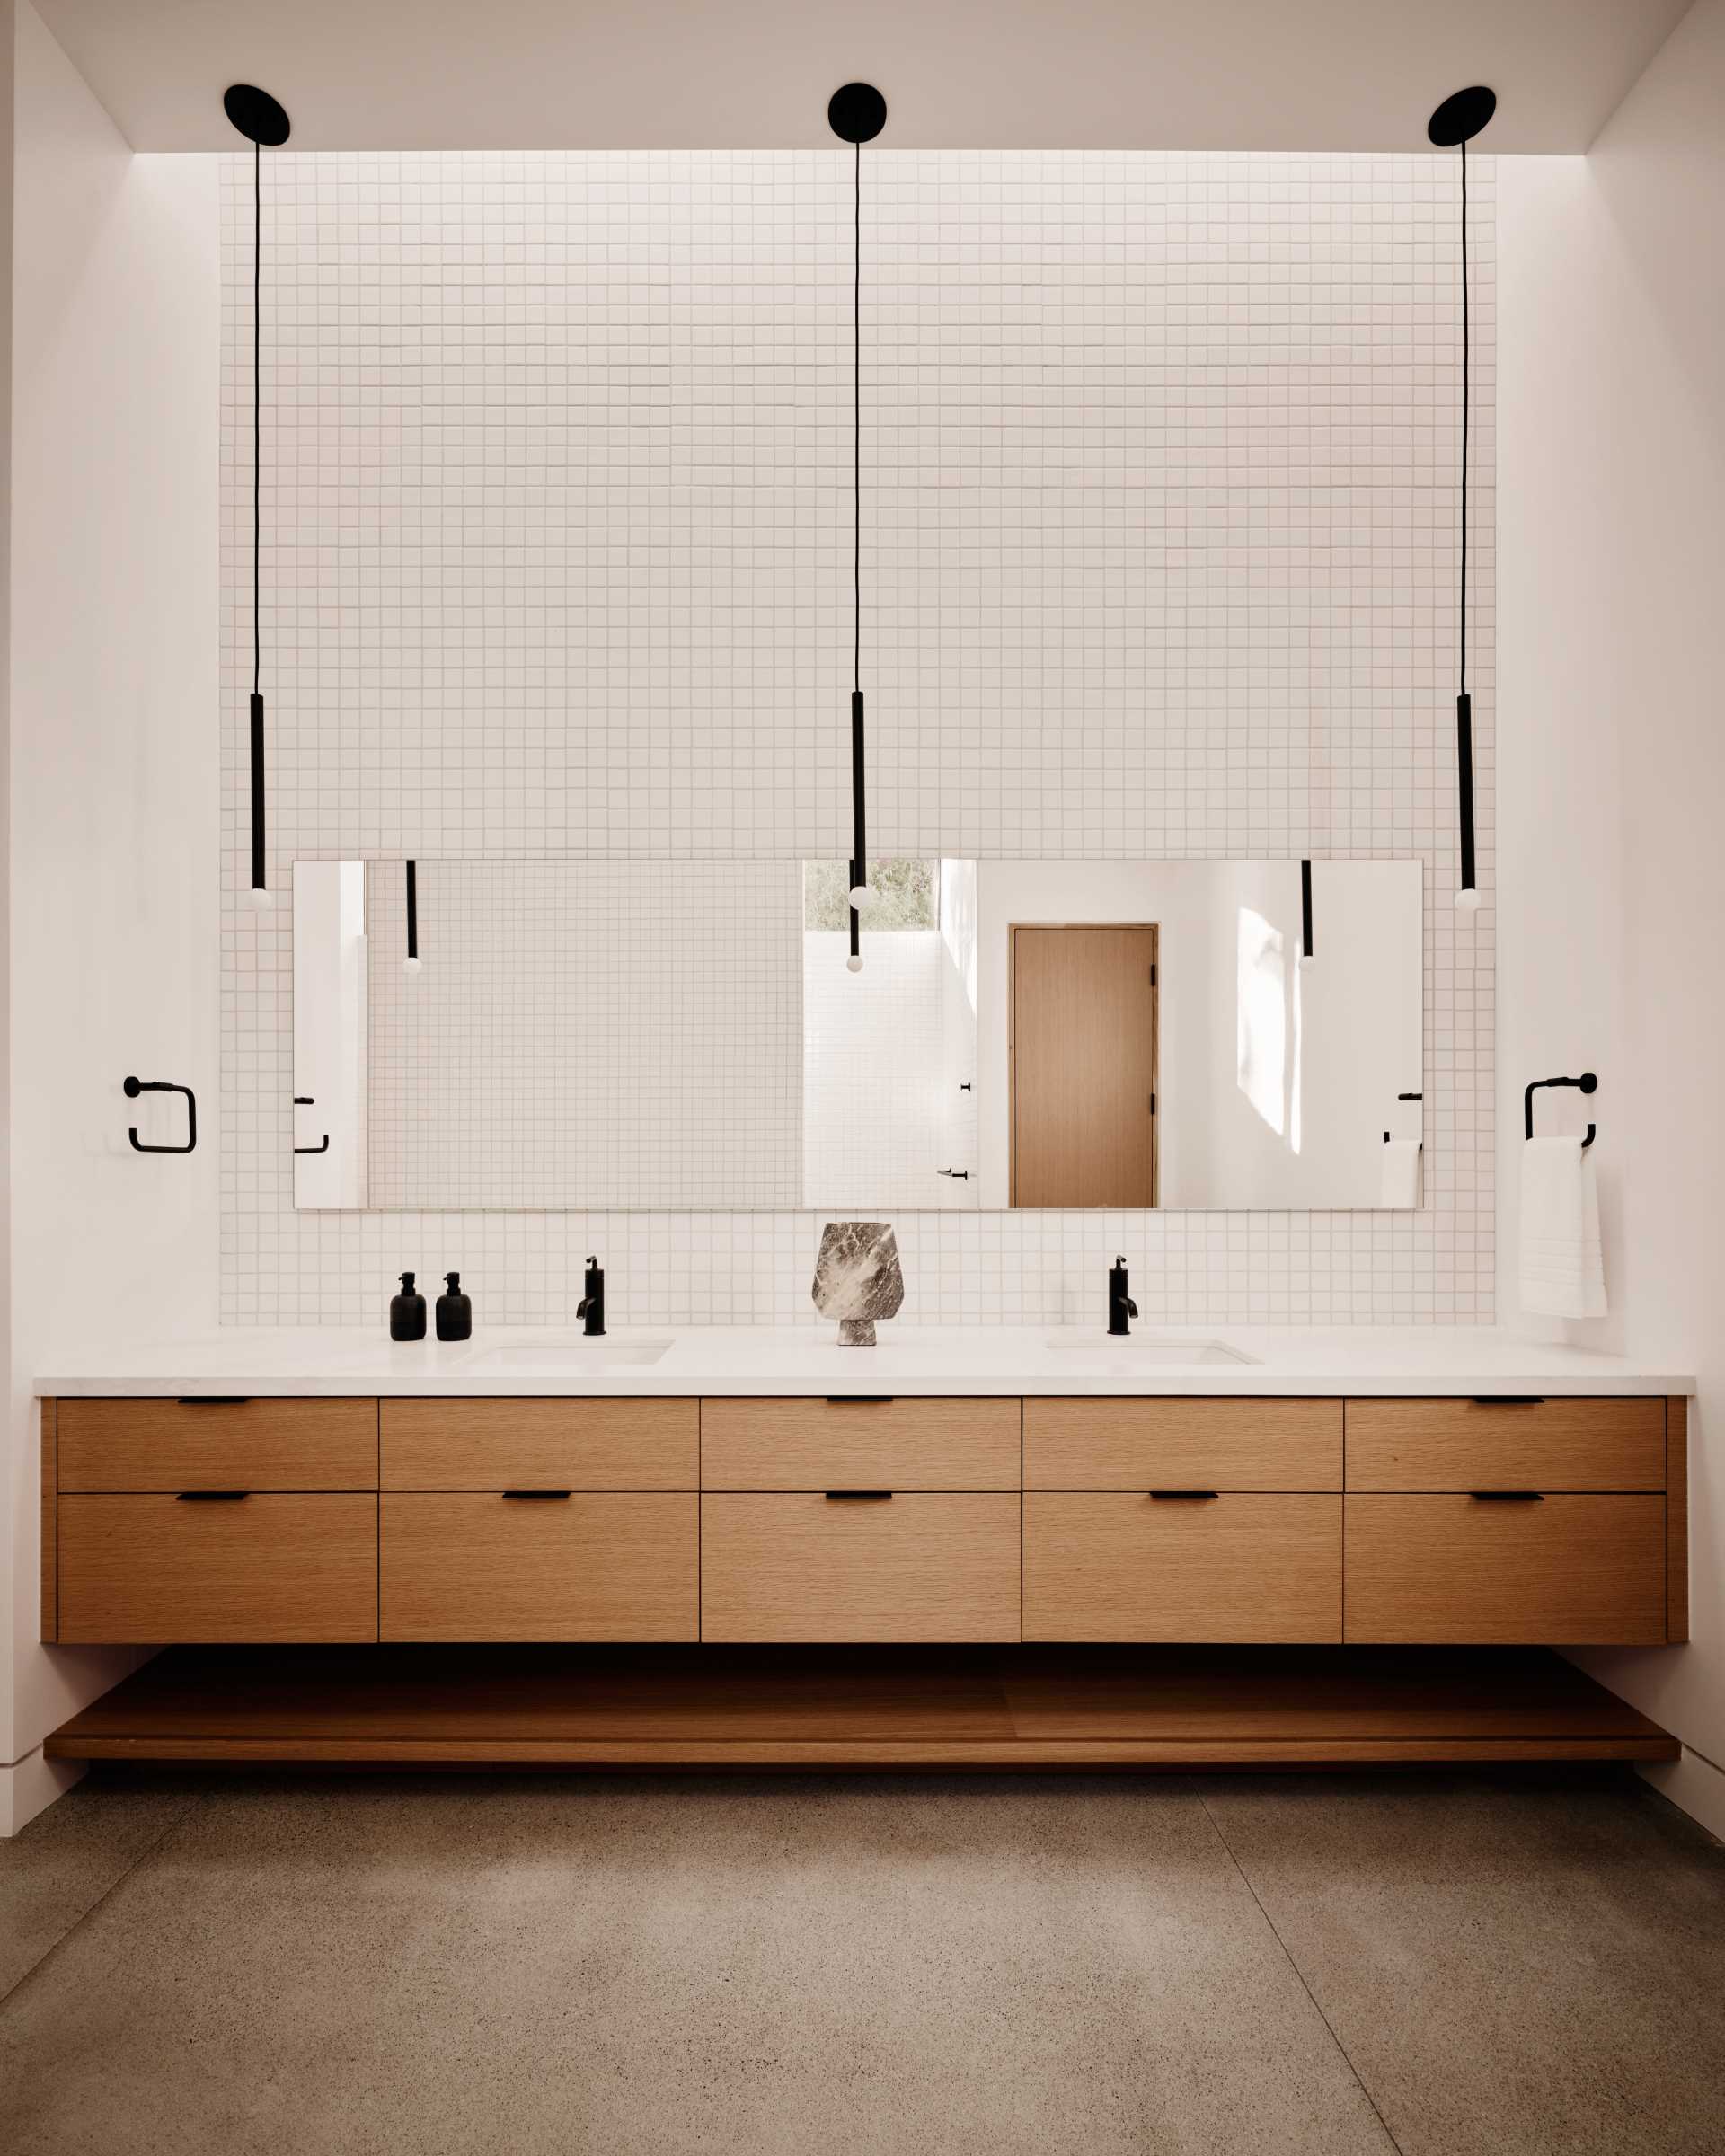 În această baie modernă, faianța acoperă pereții, de tavan atârnă lămpi minimaliste cu pandantiv, iar o chiuvetă din lemn se întinde pe perete.